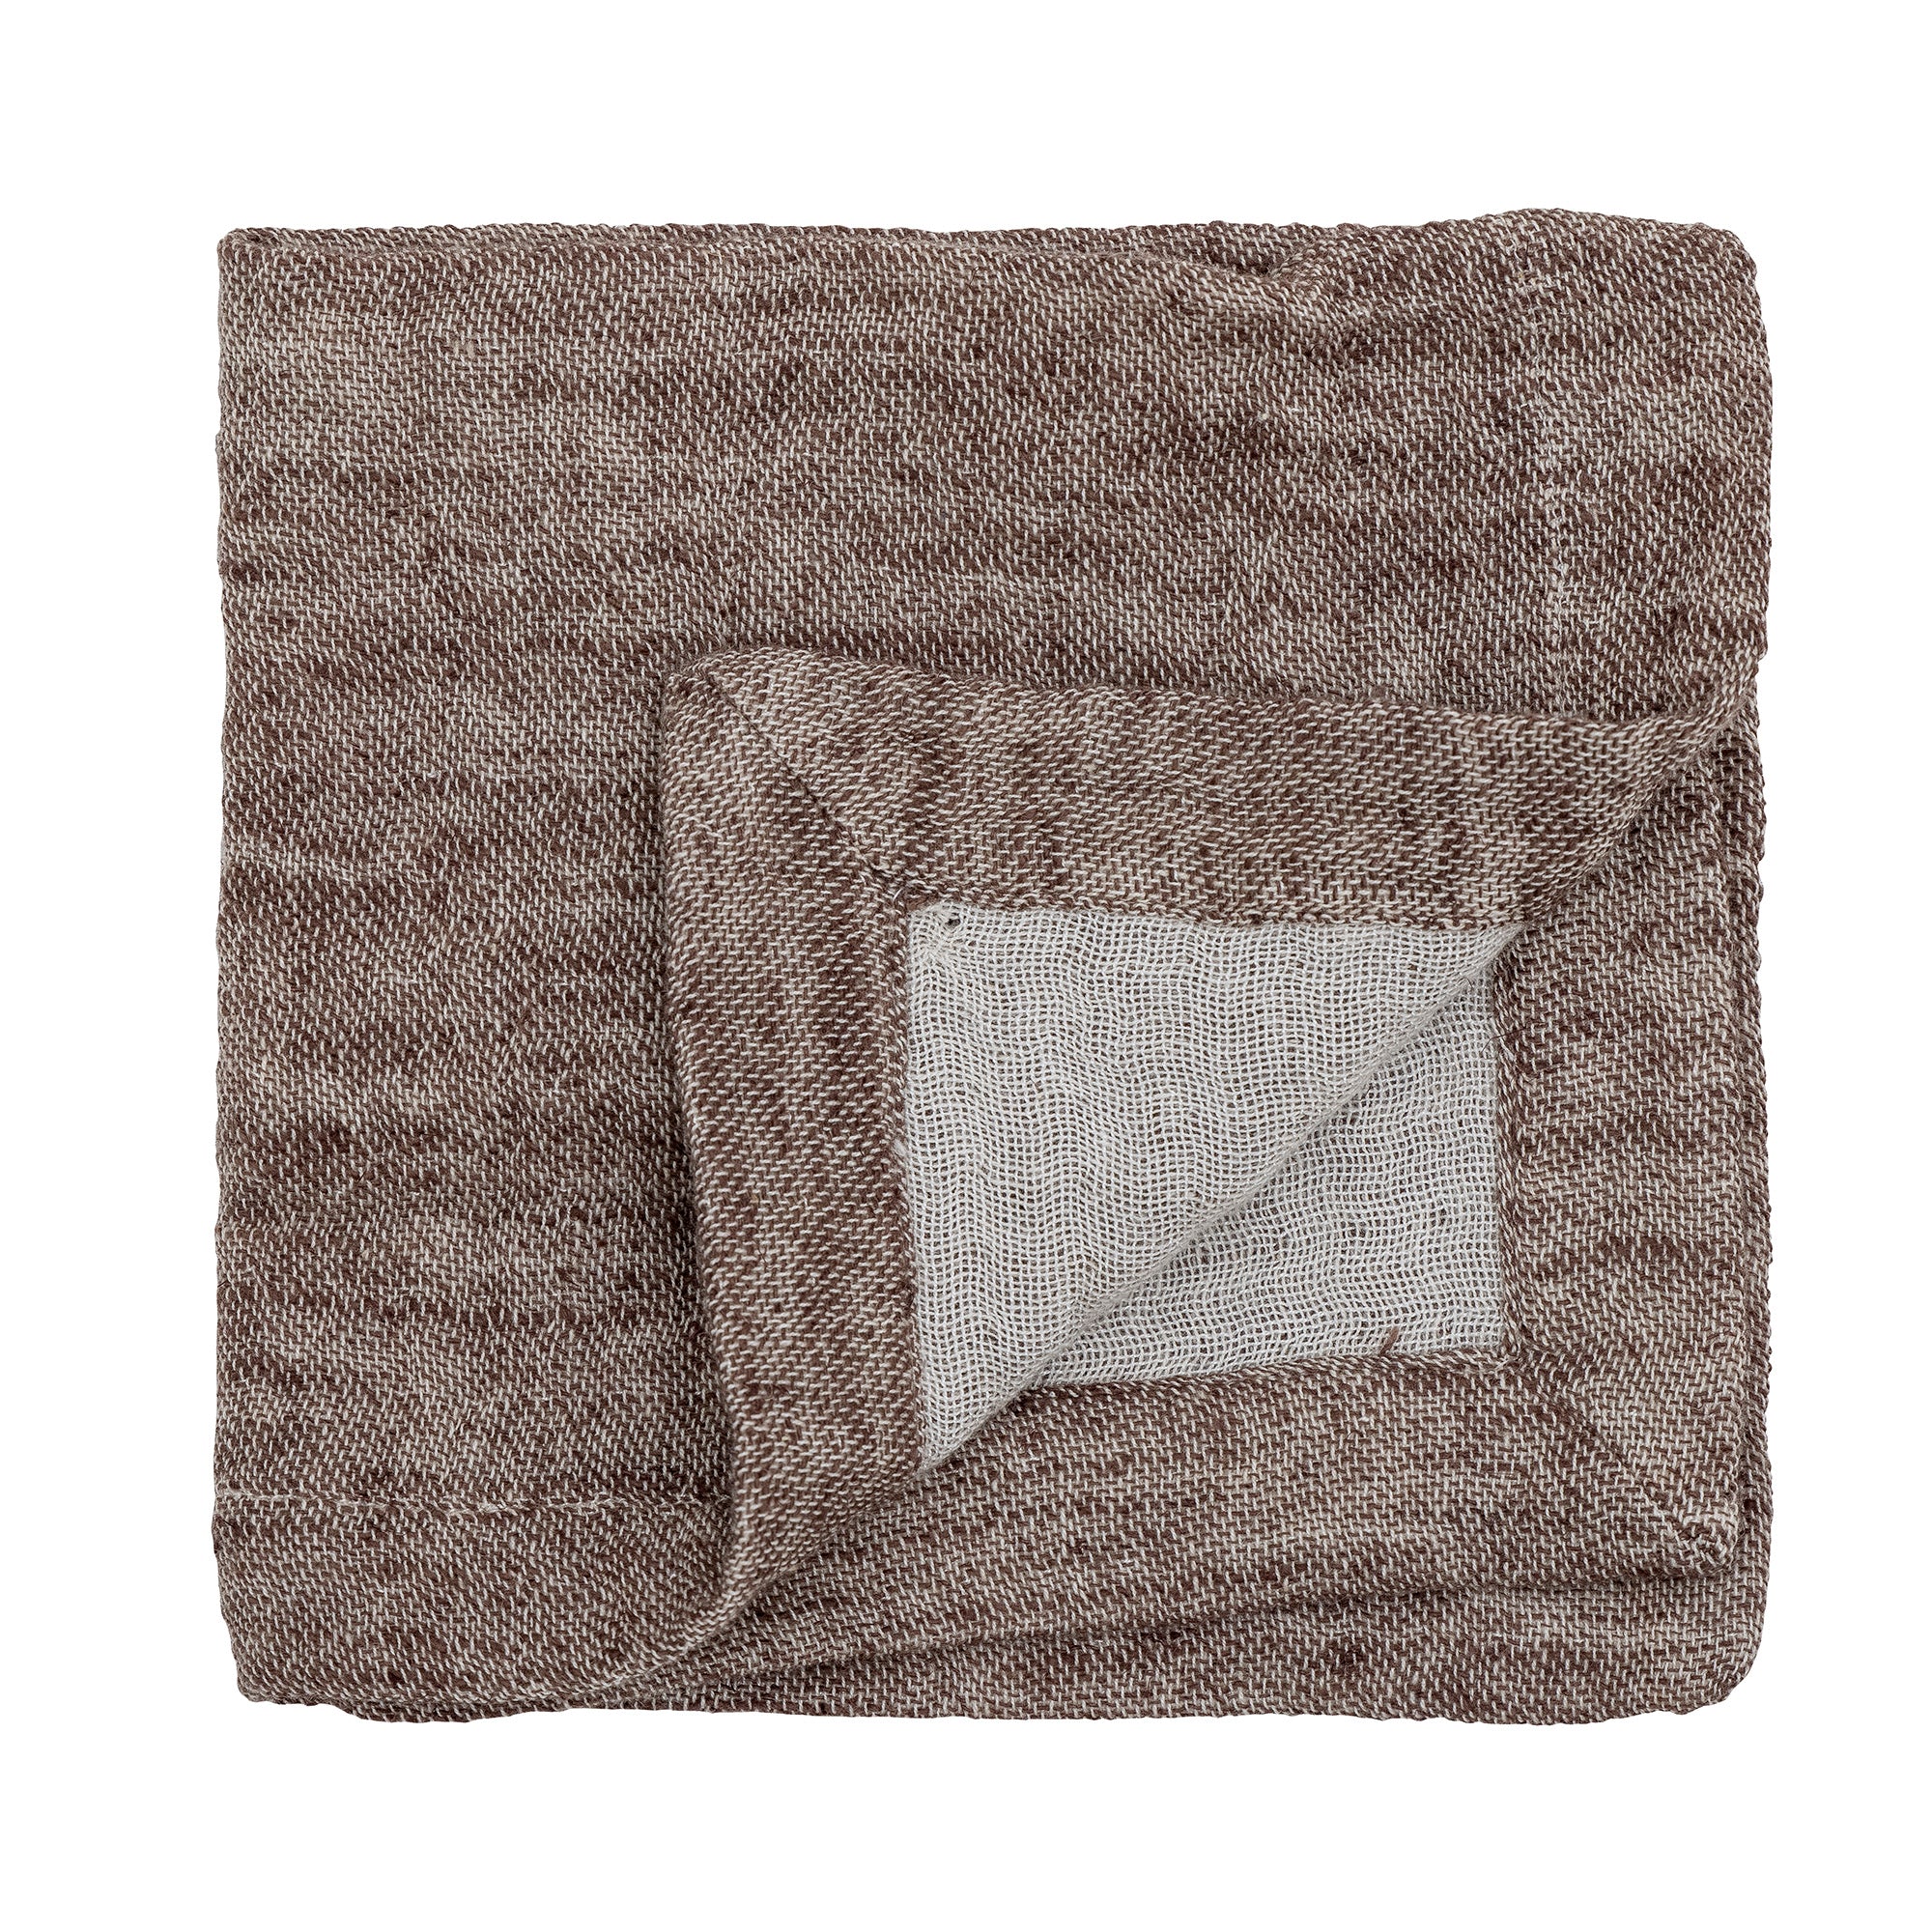 Heika napkin brown- cotton - set of 4